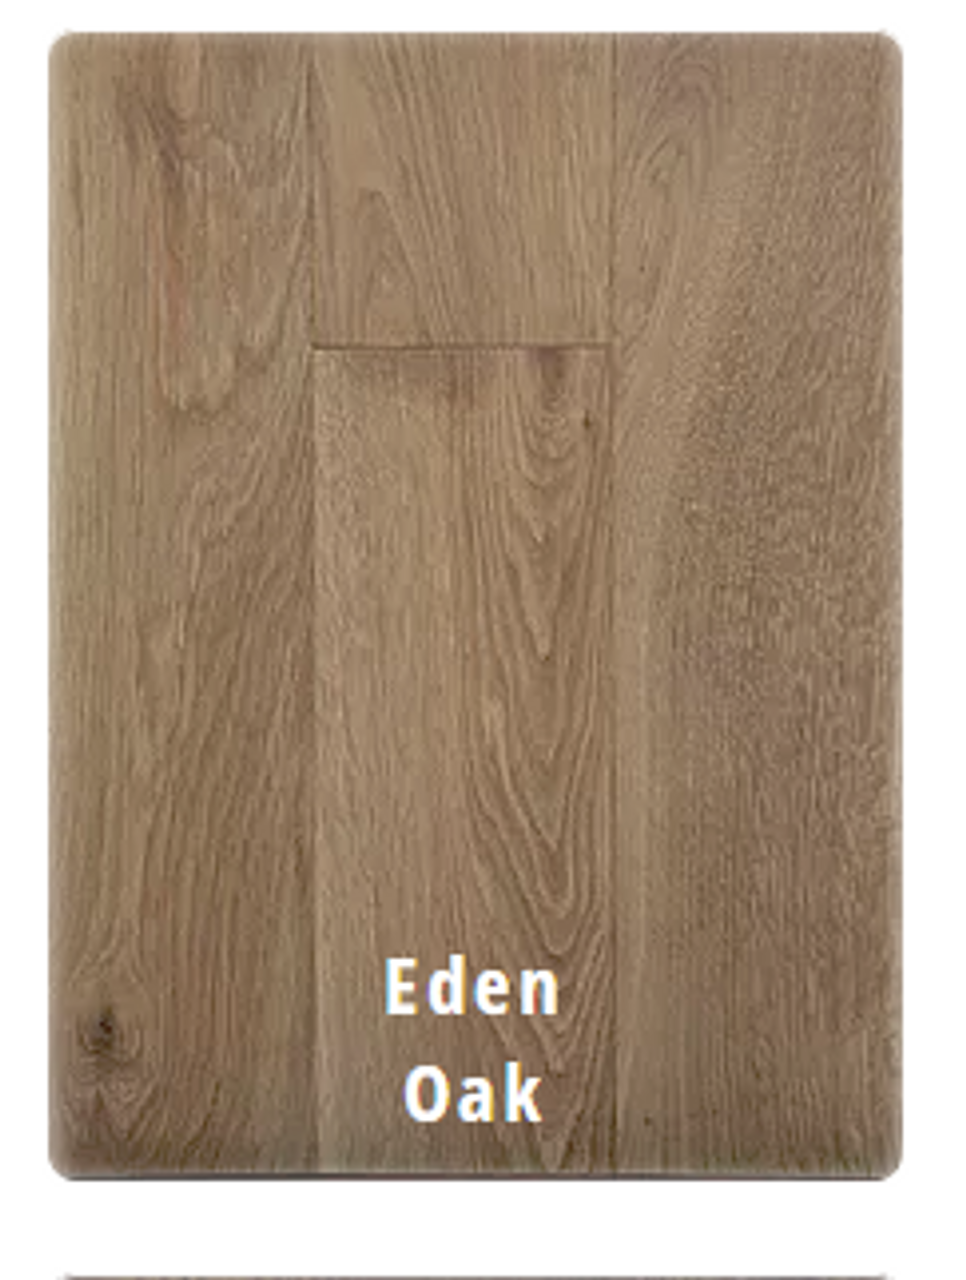 Eden Oak